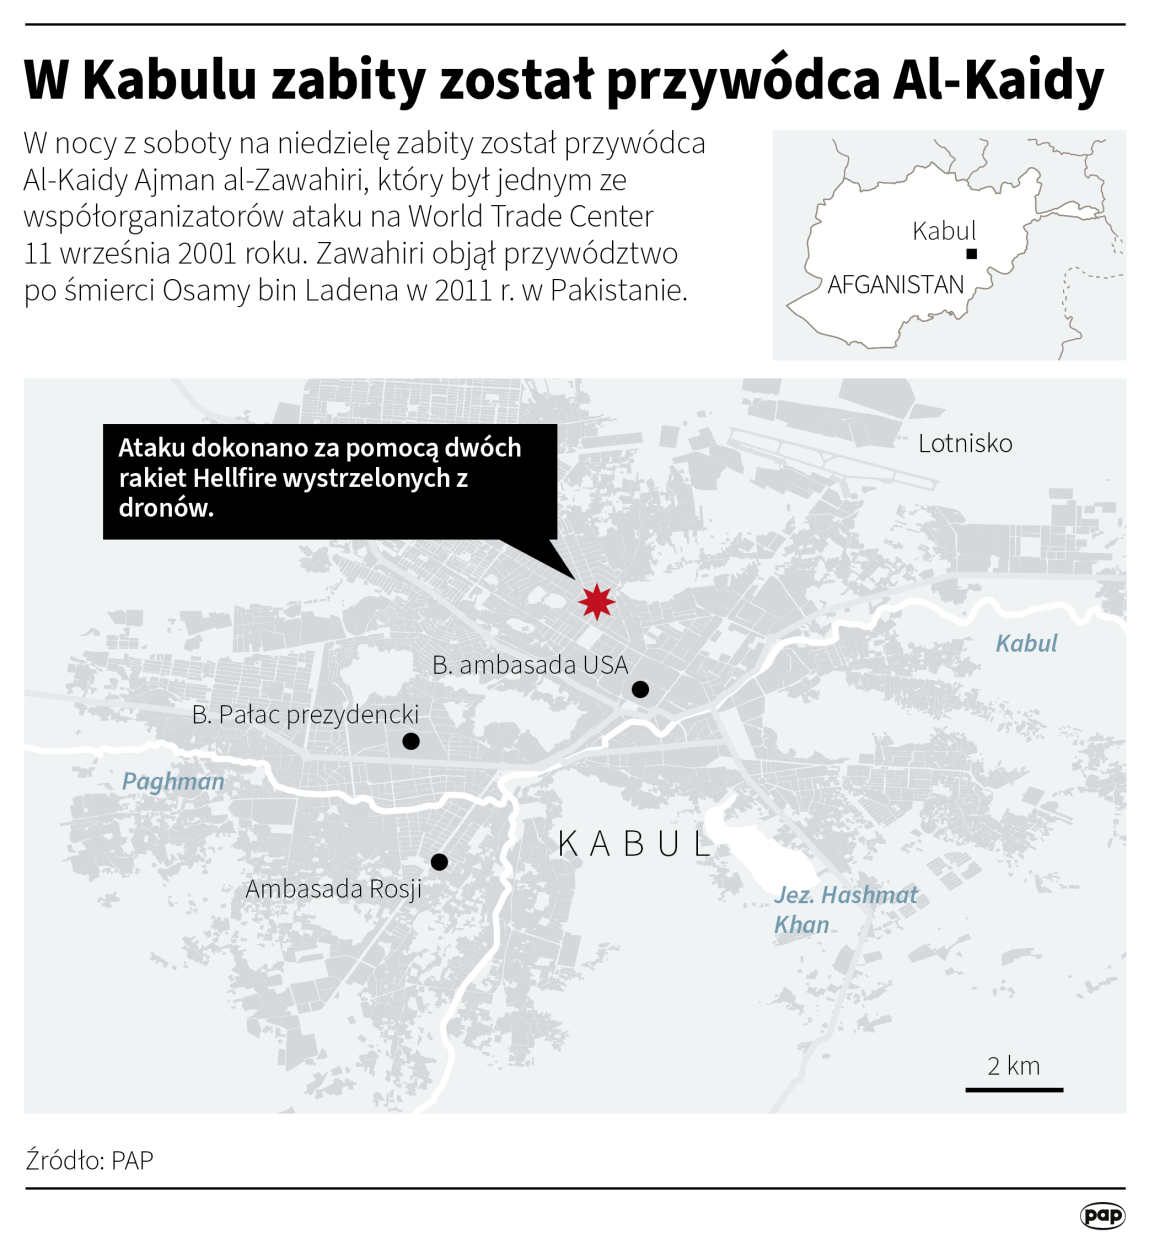 W Kabulu zabity został przywódca Al-Kaidy, autorzy: PAP/Maciej Zieliński , Adam Ziemienowicz